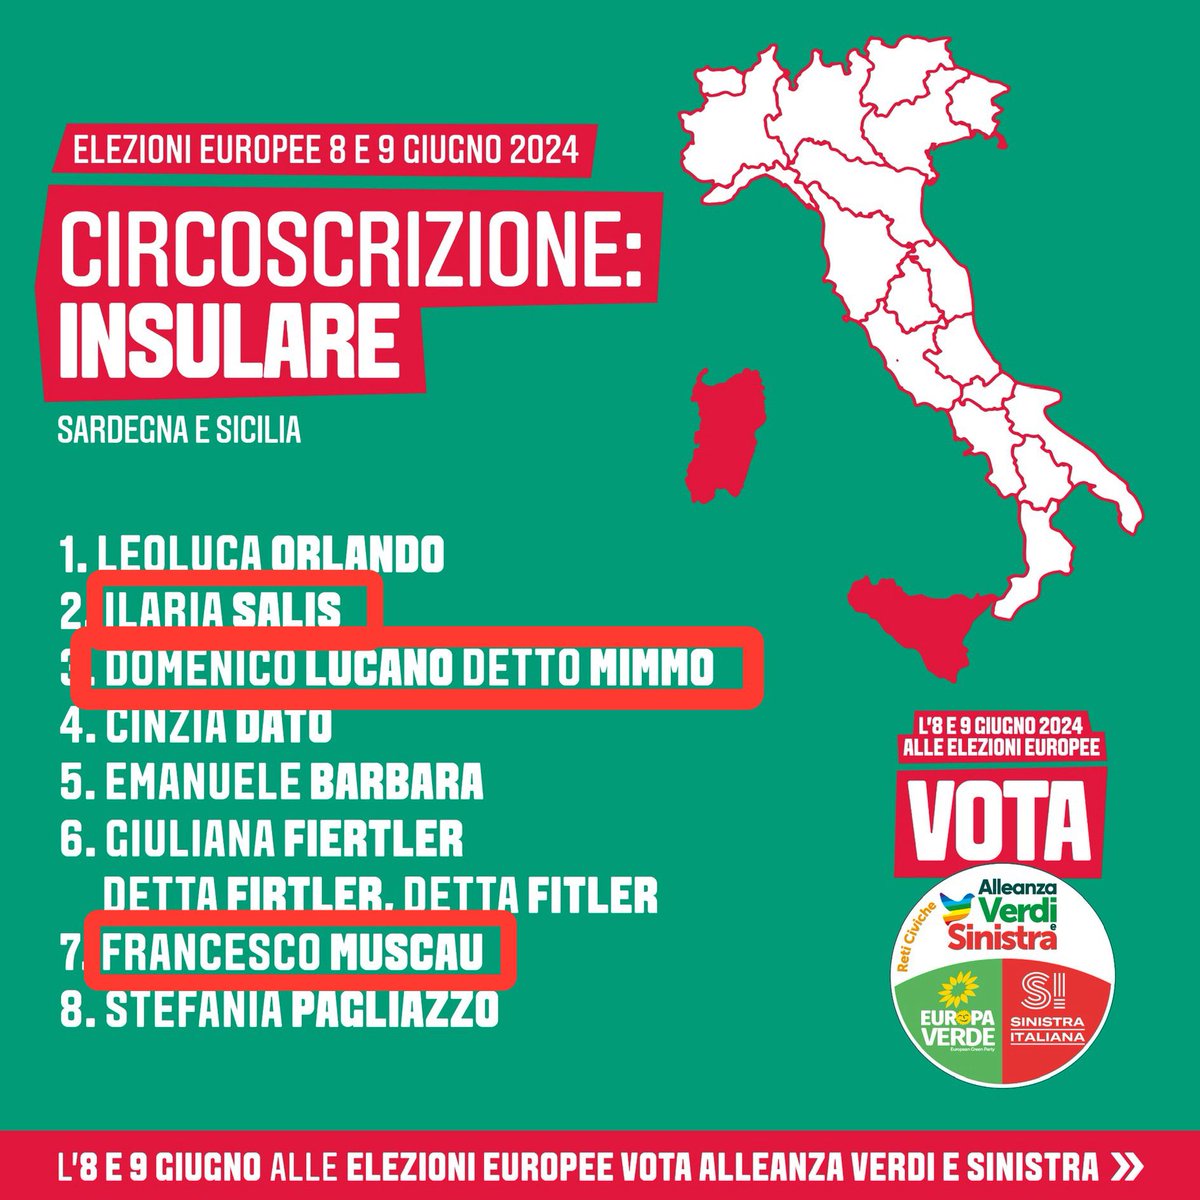 #ElezioniEuropee2024 penso che voterò così : #IlariaSalis #DomenicoLucano #FrancescoMuscau